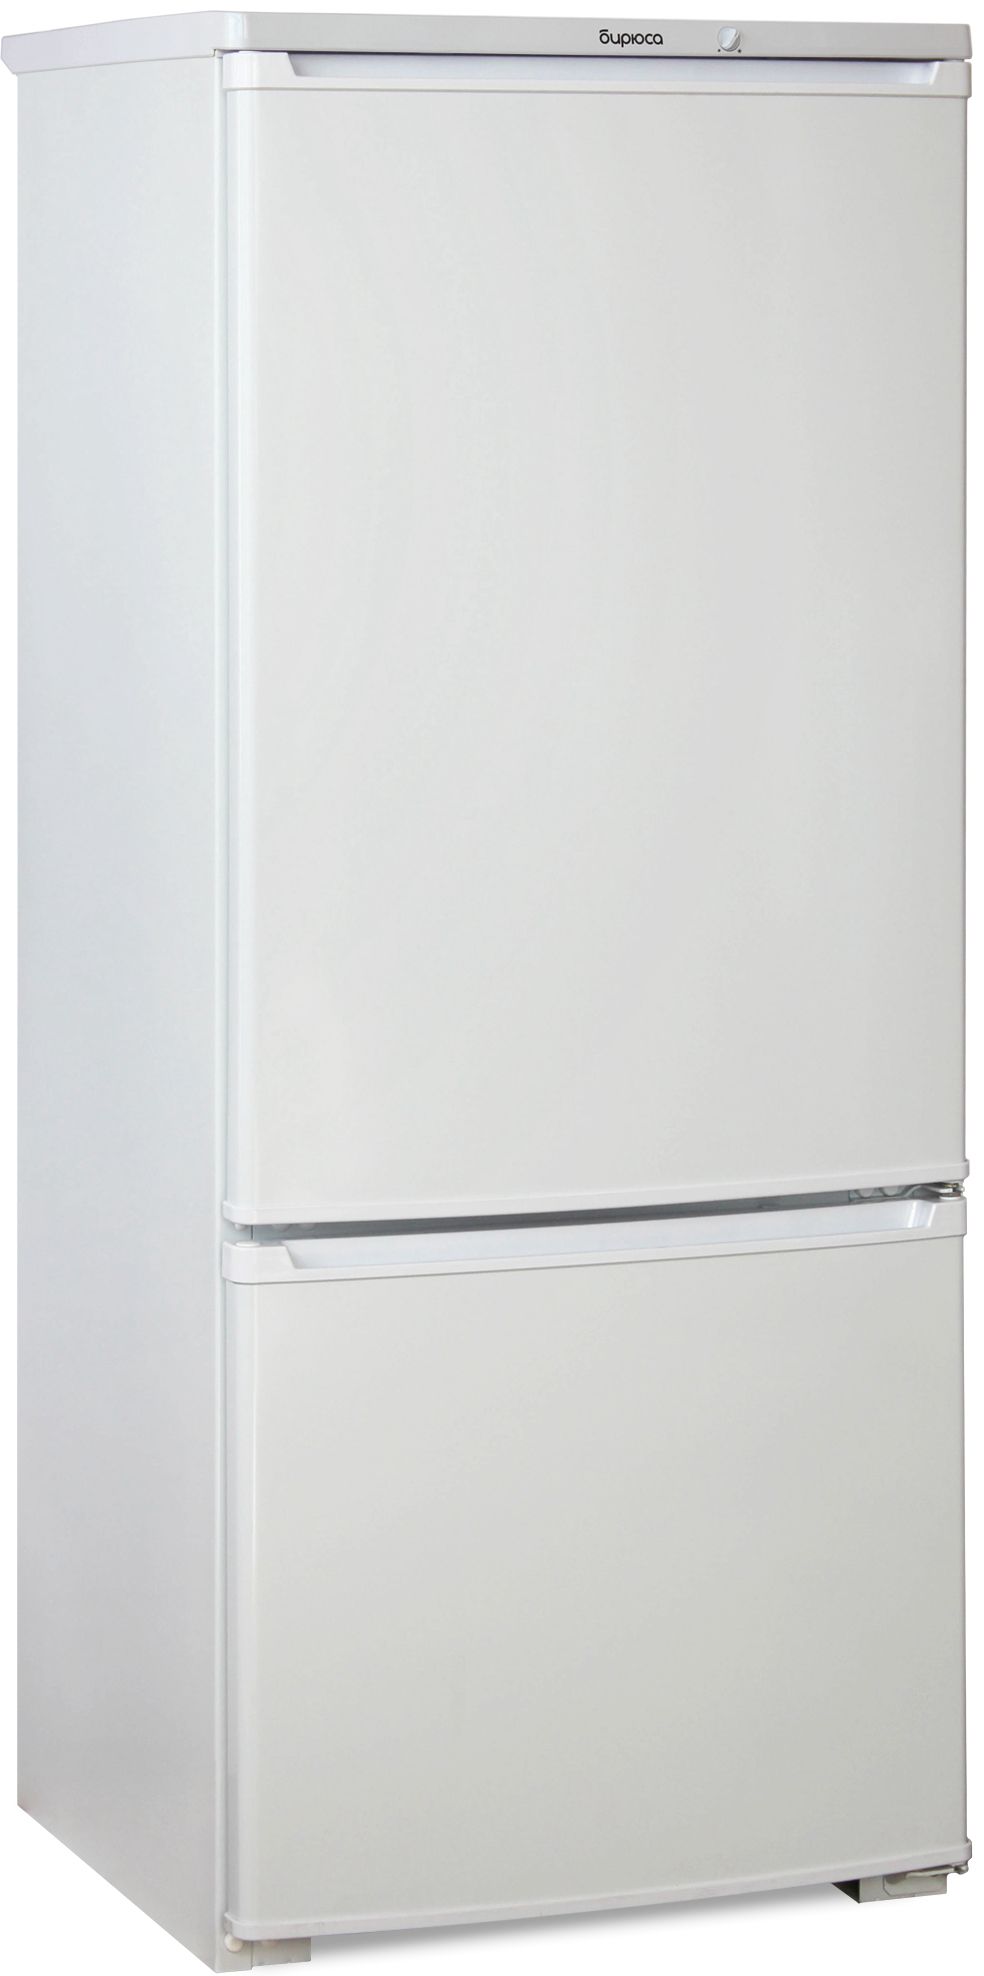 холодильник бирюса 151, купить в Красноярске холодильник бирюса 151,  купить в Красноярске дешево холодильник бирюса 151, купить в Красноярске минимальной цене холодильник бирюса 151